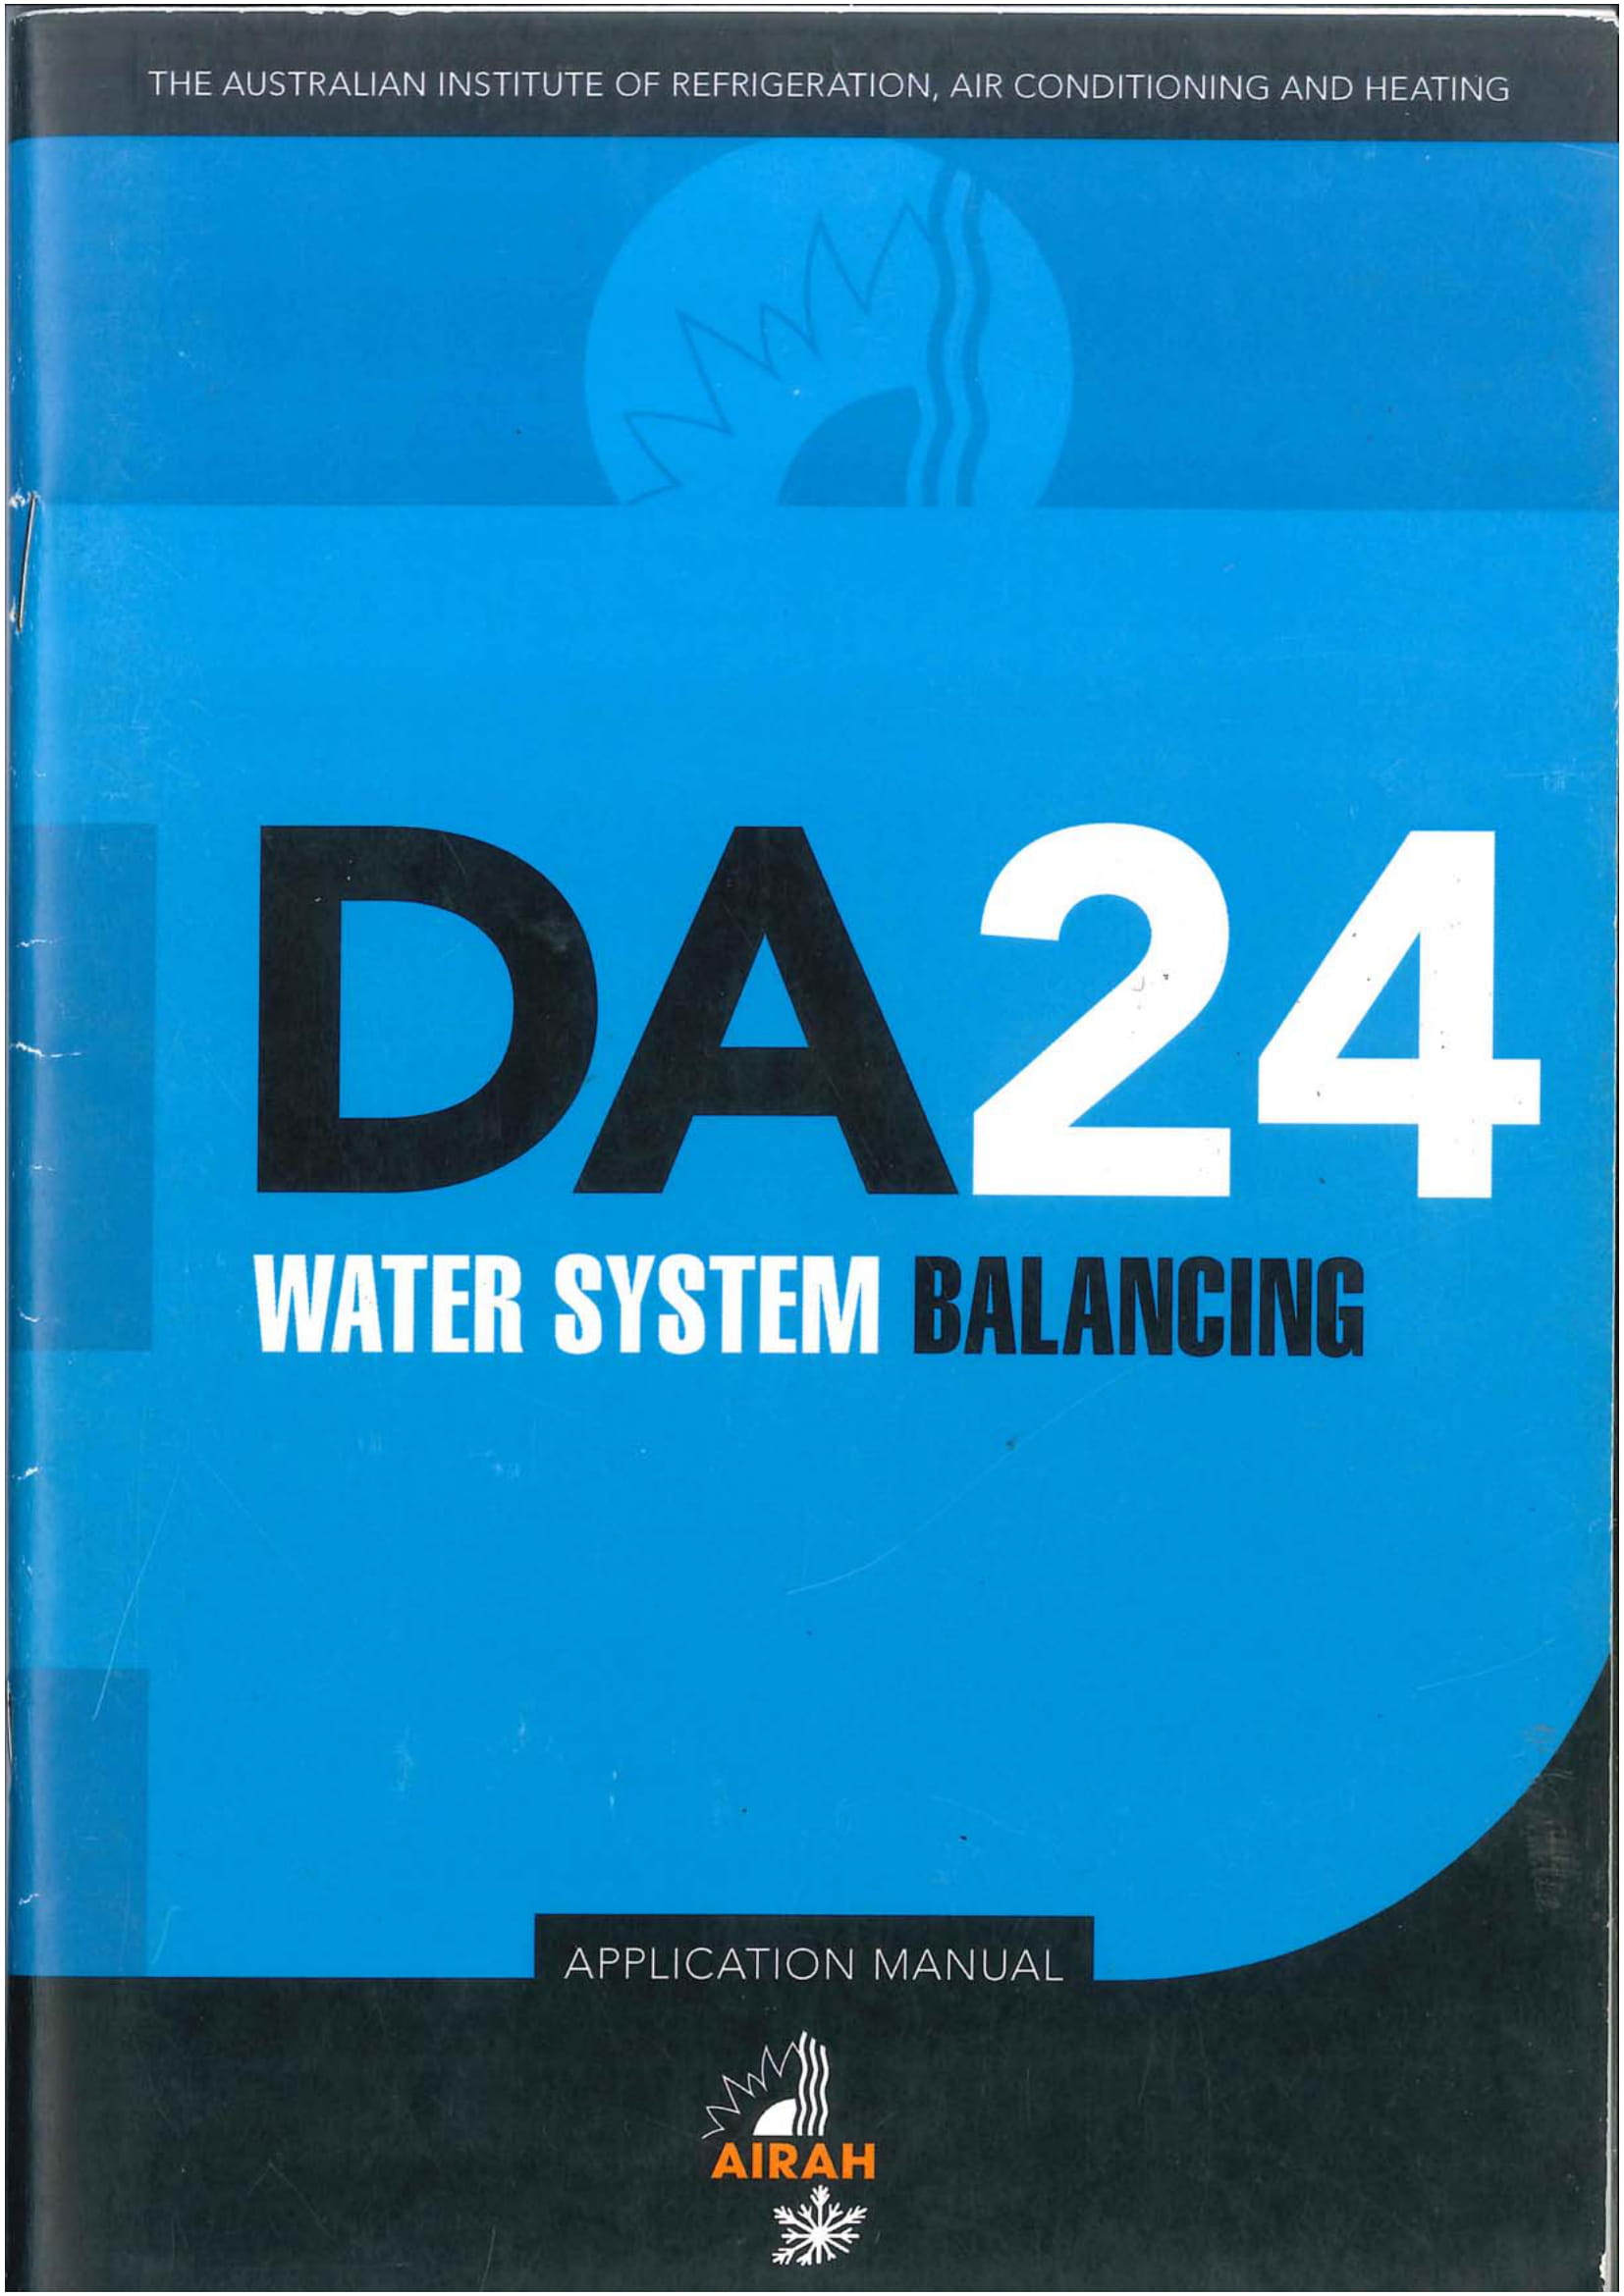 DA24 water system balancing